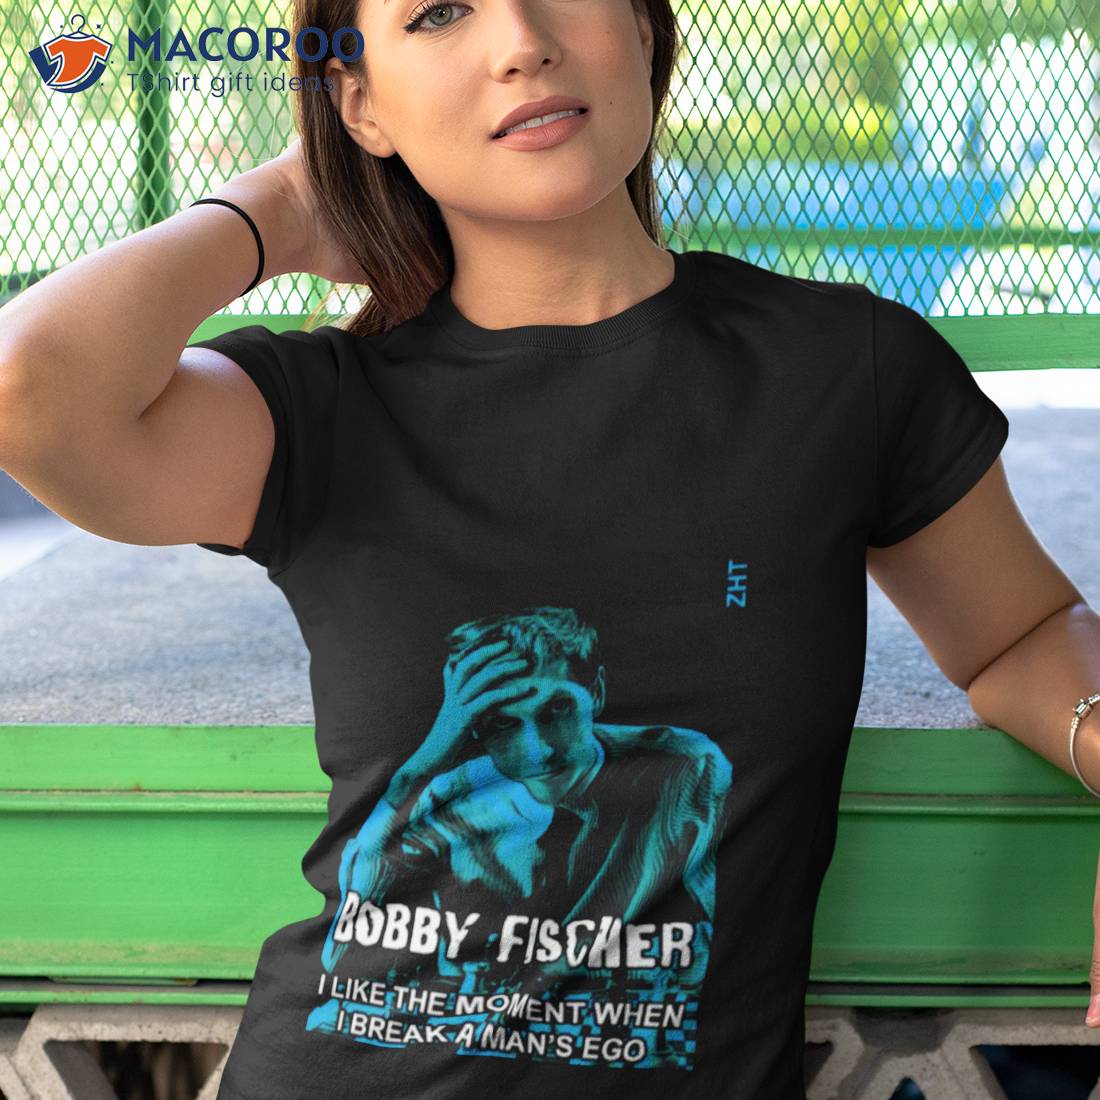 The Legend: Bobby Fischer